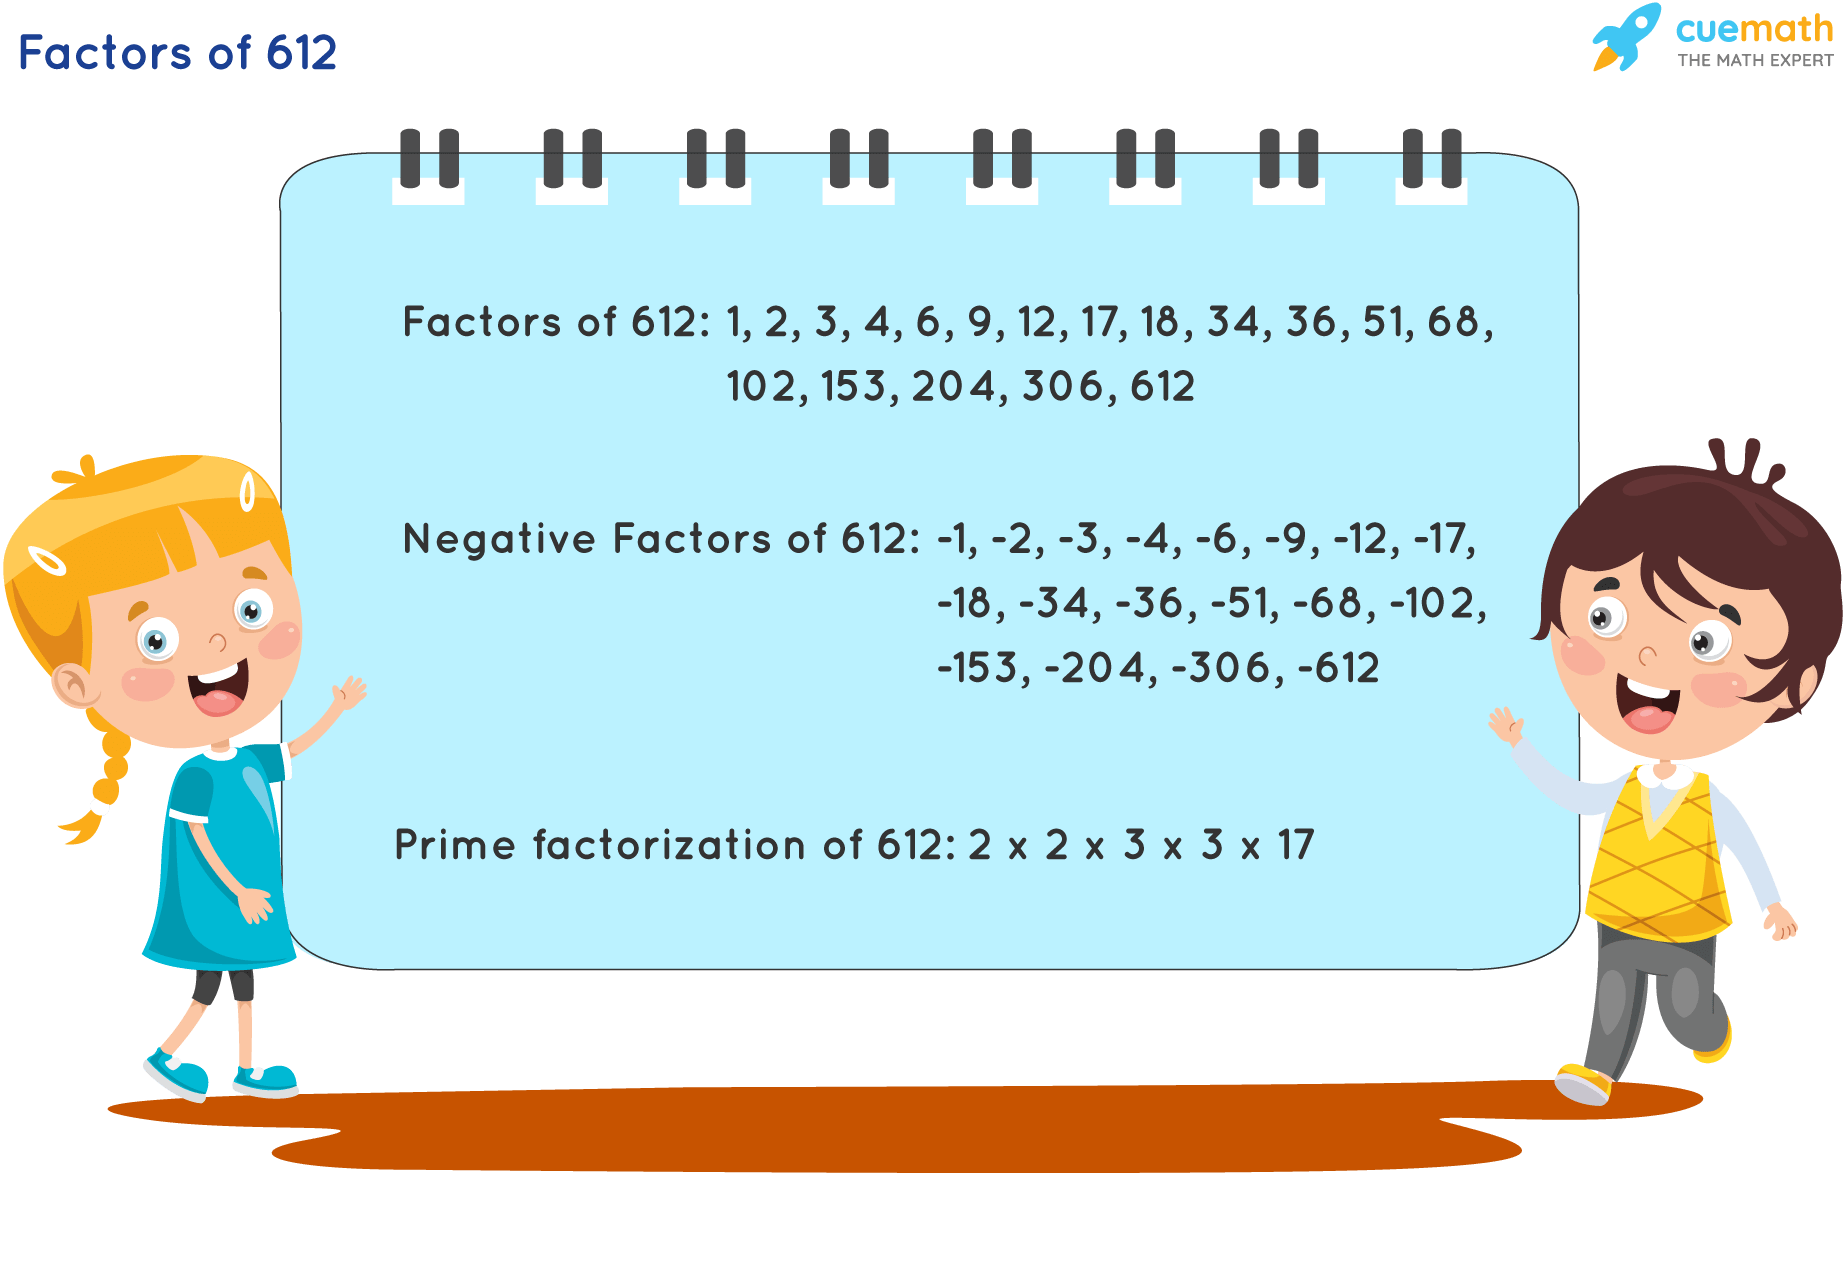 Factors of 612